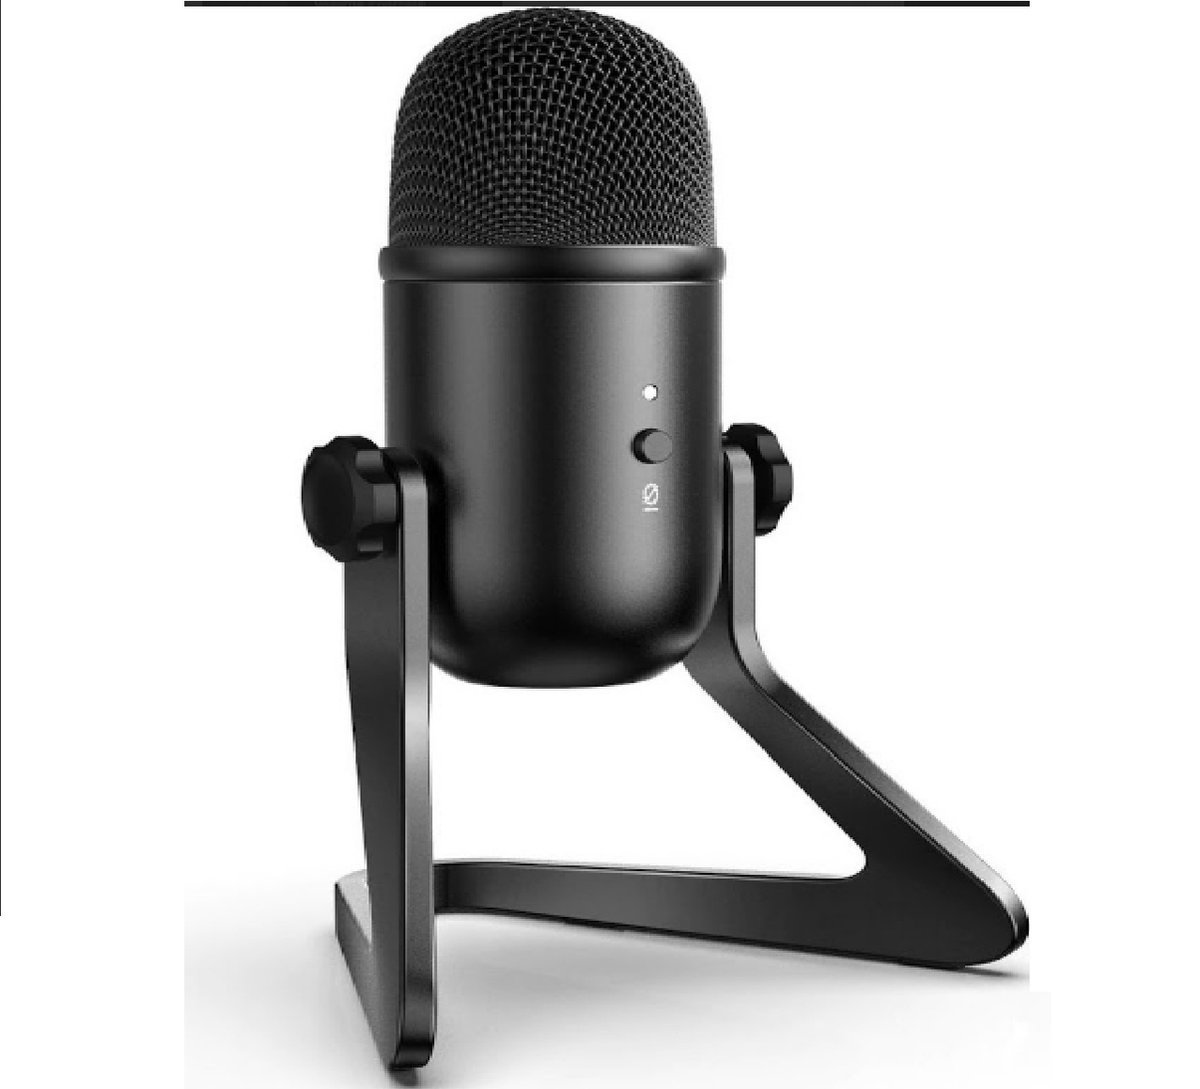 Velox Professionele USB Opname microfoon voor Podcast, Zoom, Gamen etc. - met bureaustandaard